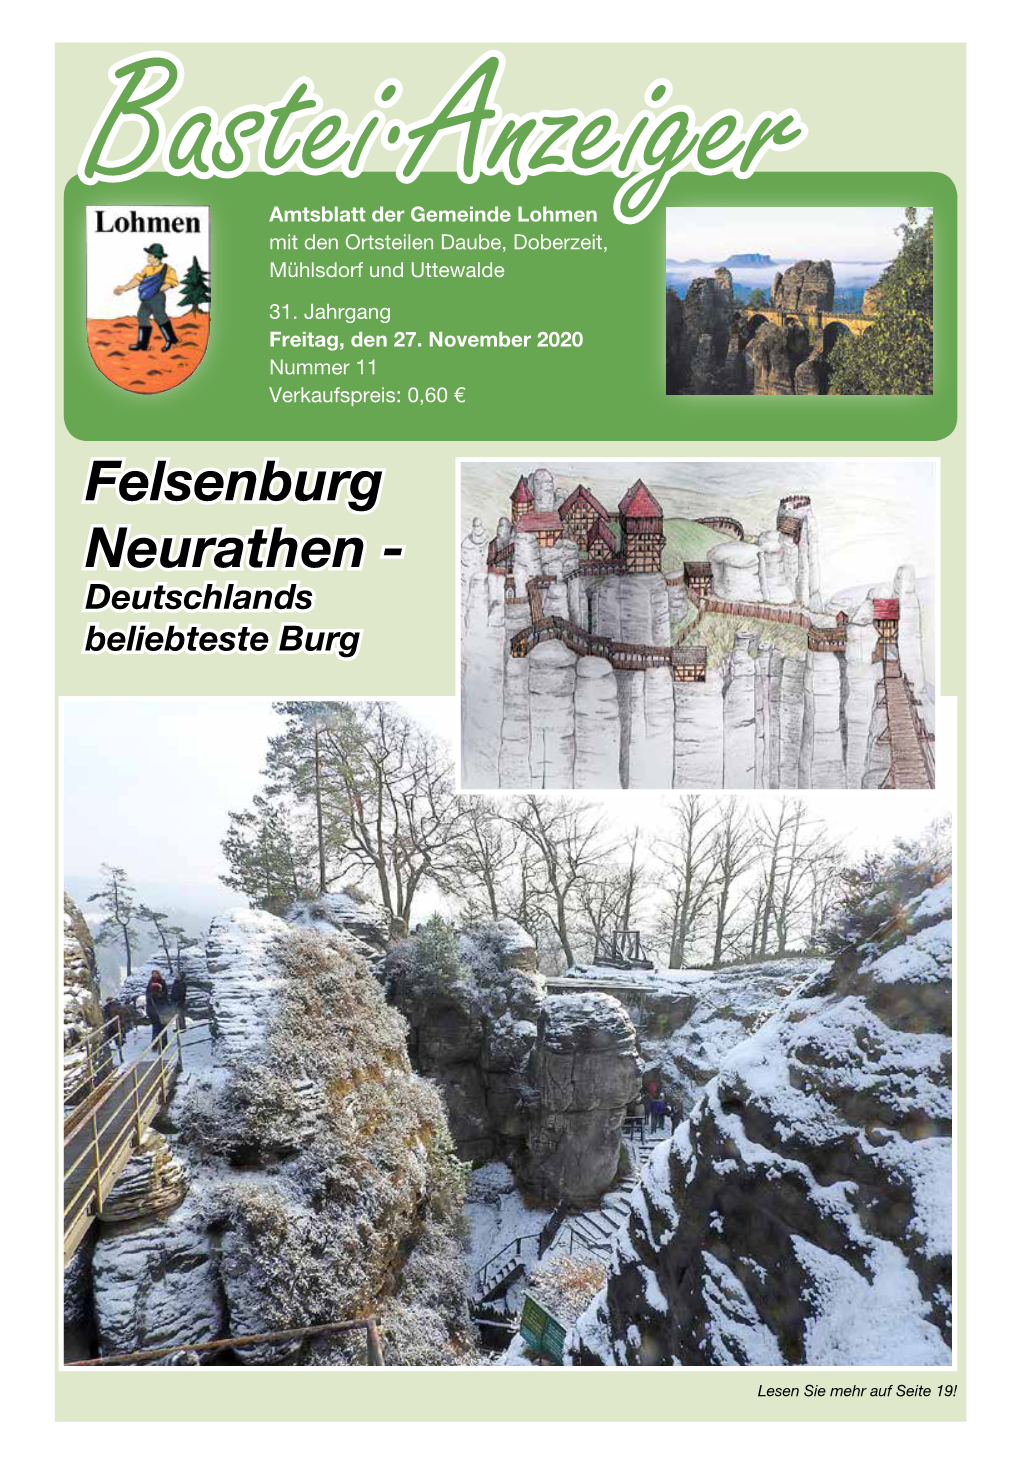 Felsenburg Neurathen - Deutschlands Beliebteste Burg